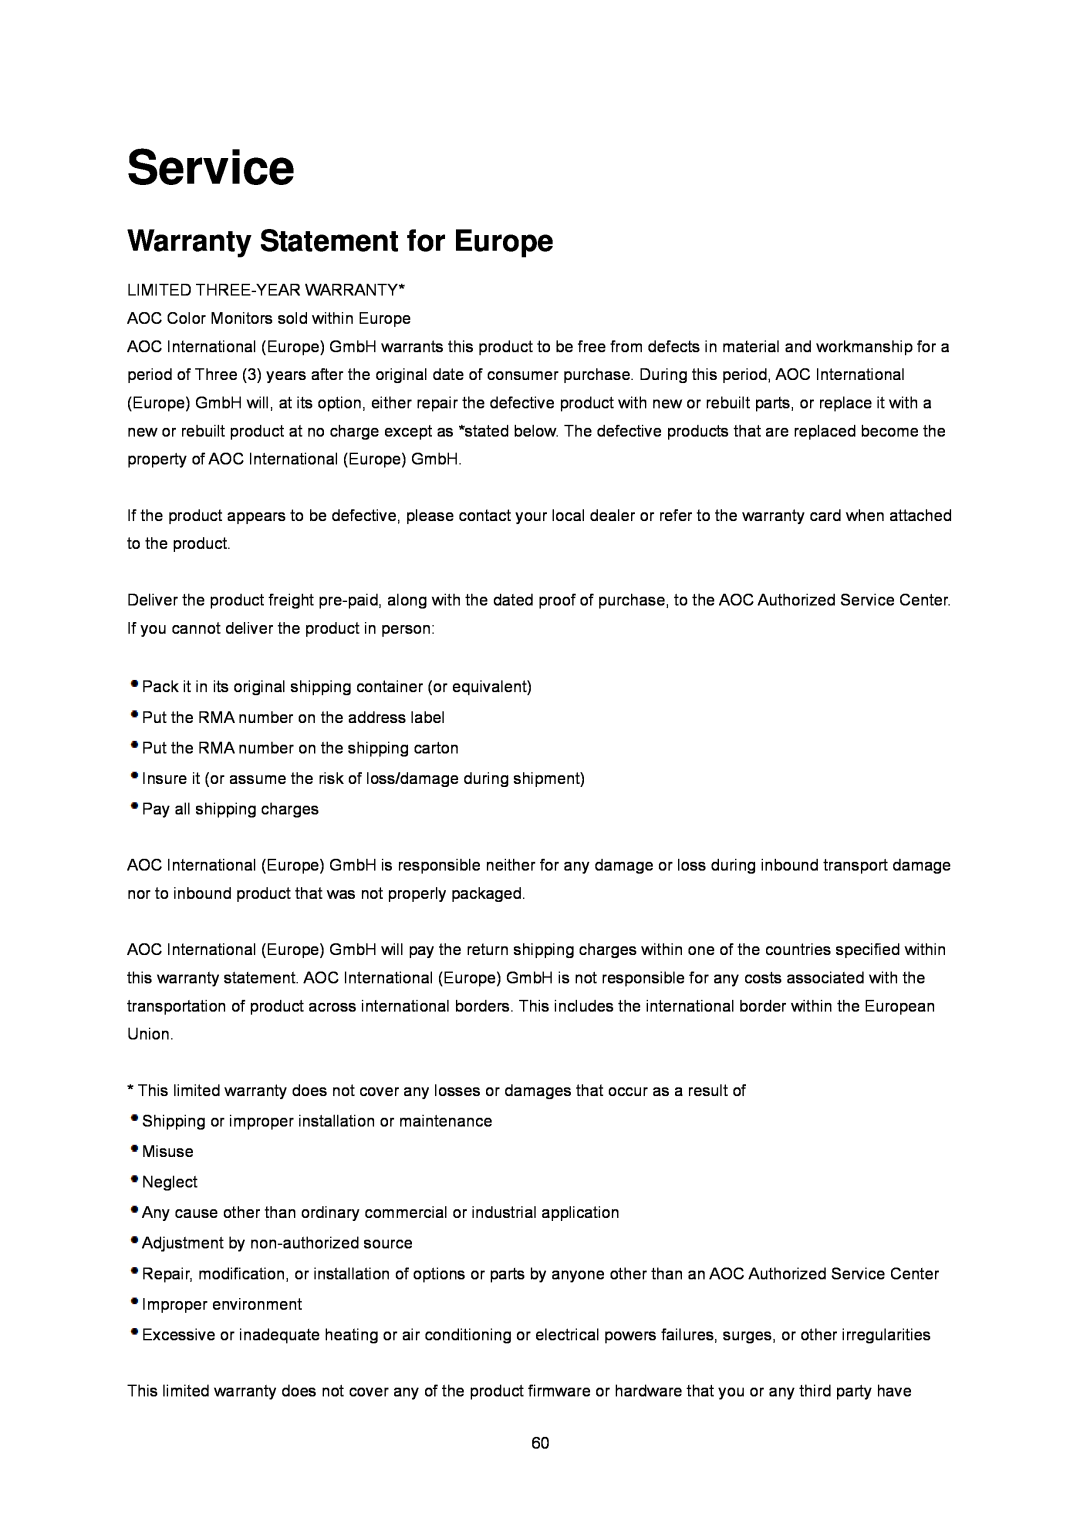 AOC E2243FWU, E2243FWK manual Service, Warranty Statement for Europe 